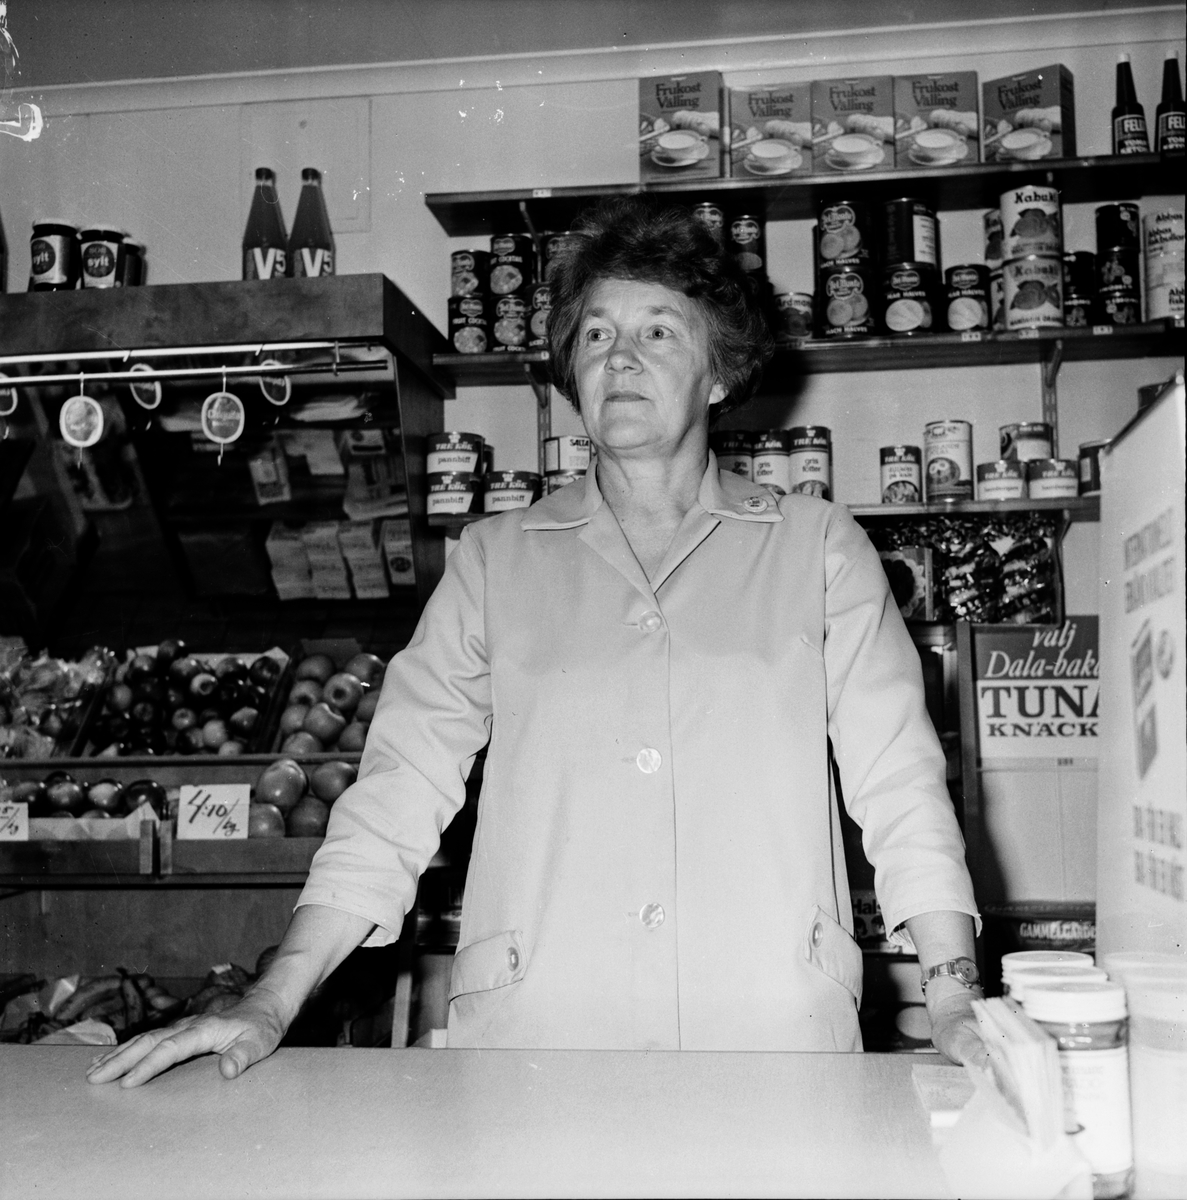 Affären Hanks i Flästa upphör. Affärsbiträde Gunborg Brolin.
Butiken ägdes av Linnéa Eriksson.
September 1972